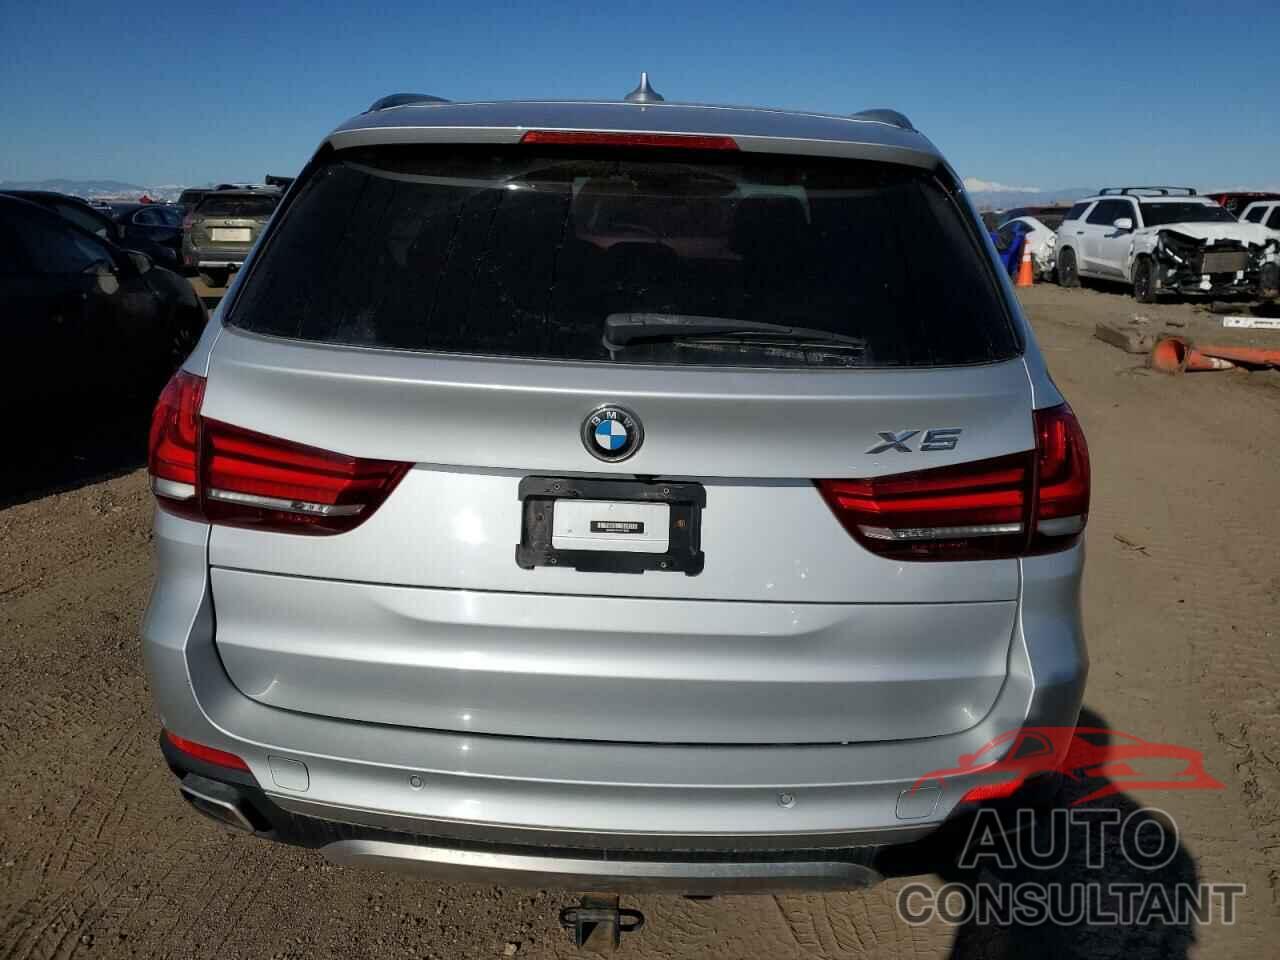 BMW X5 2018 - 5UXKR0C5XJL071839